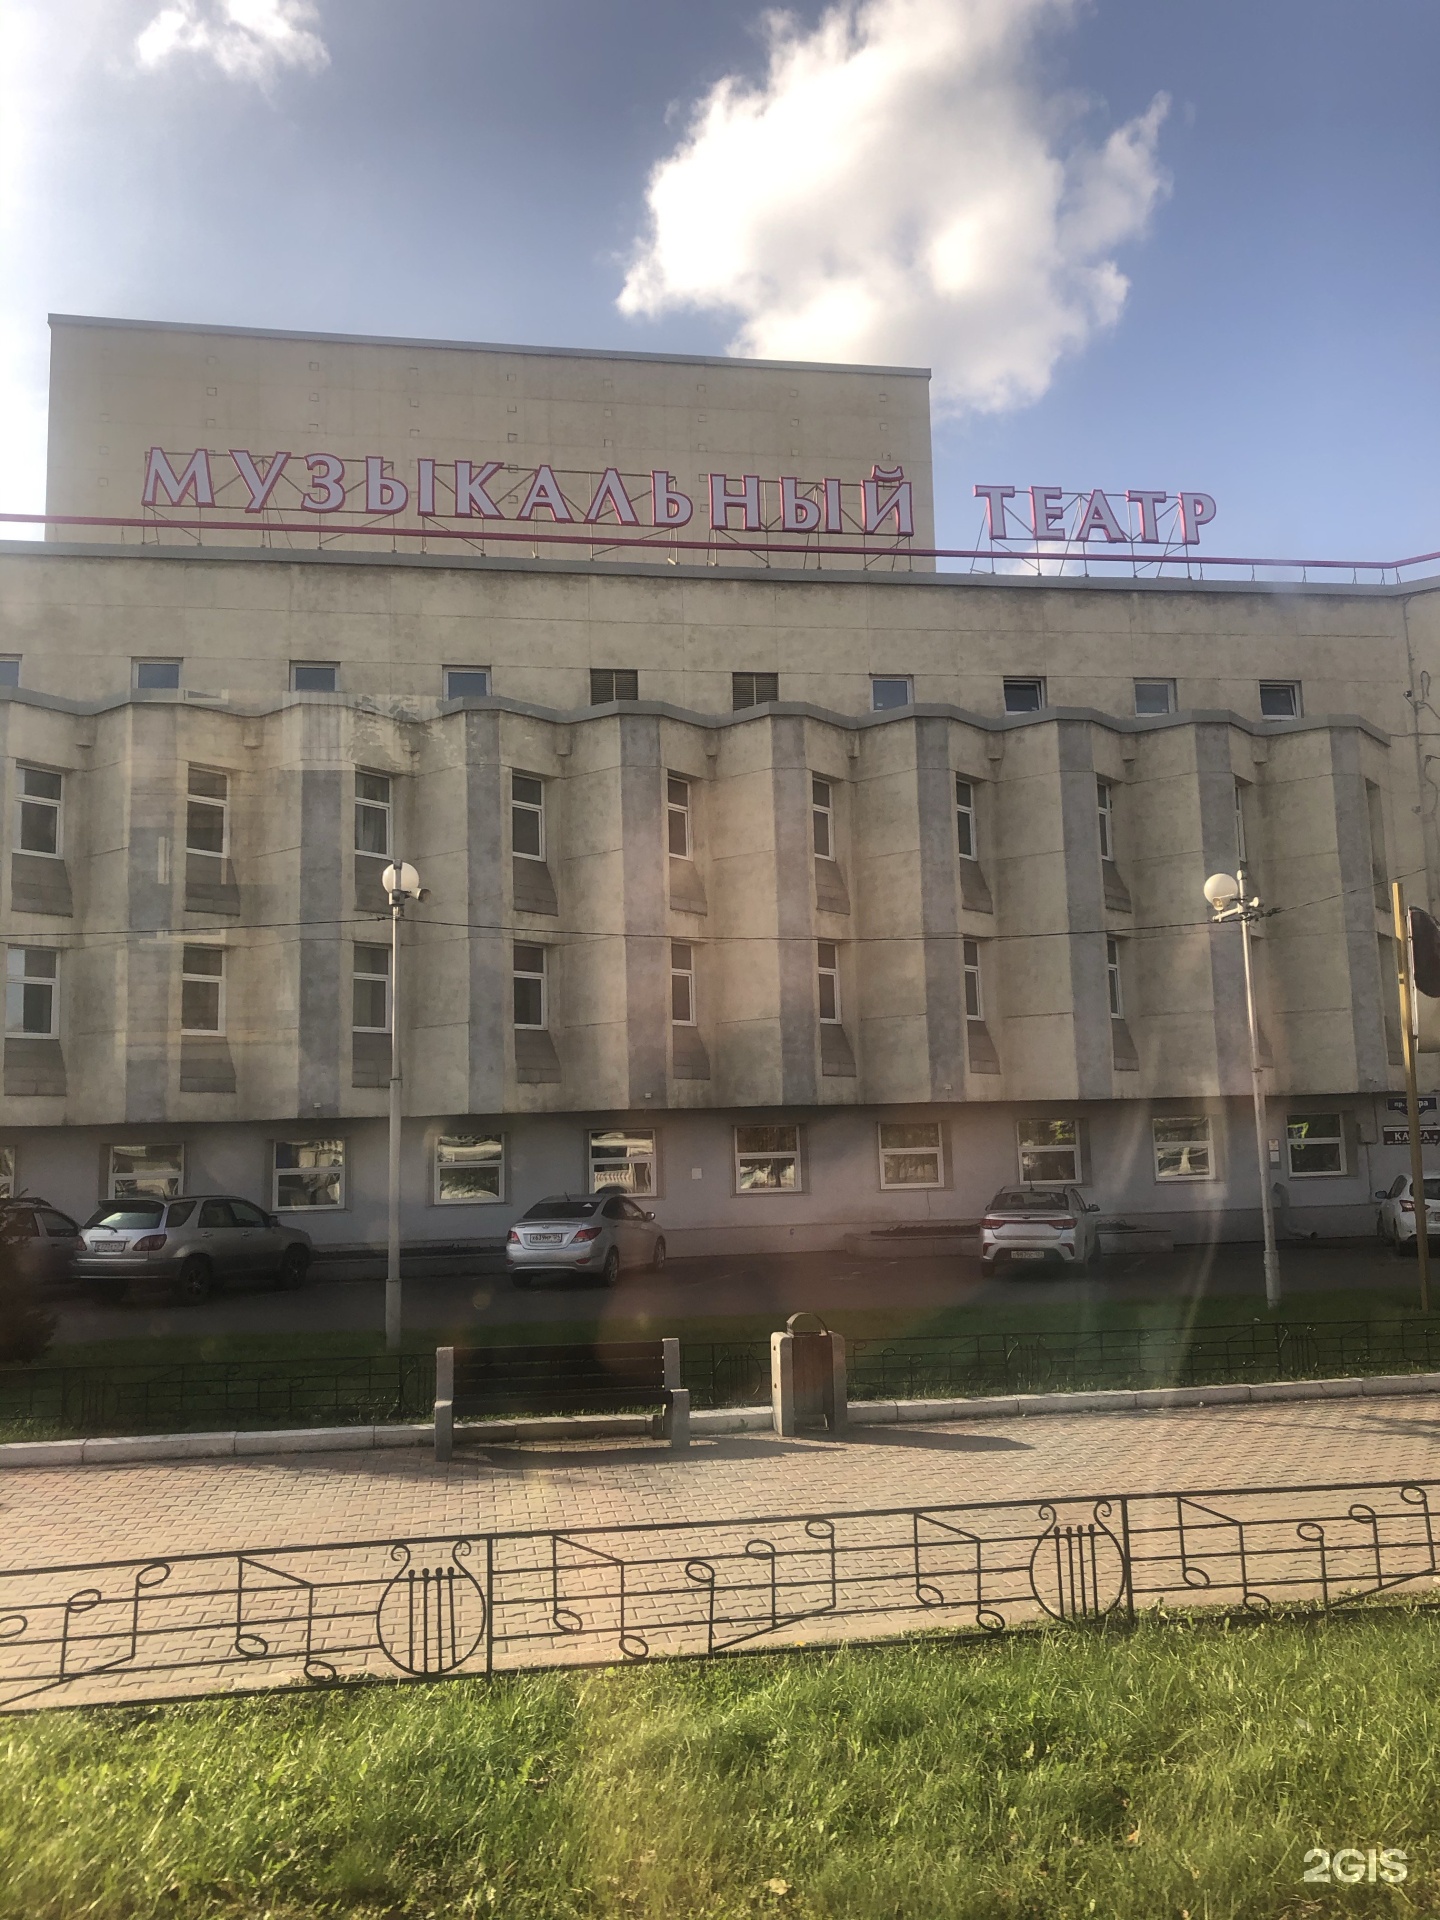 музыкальный театр в красноярске